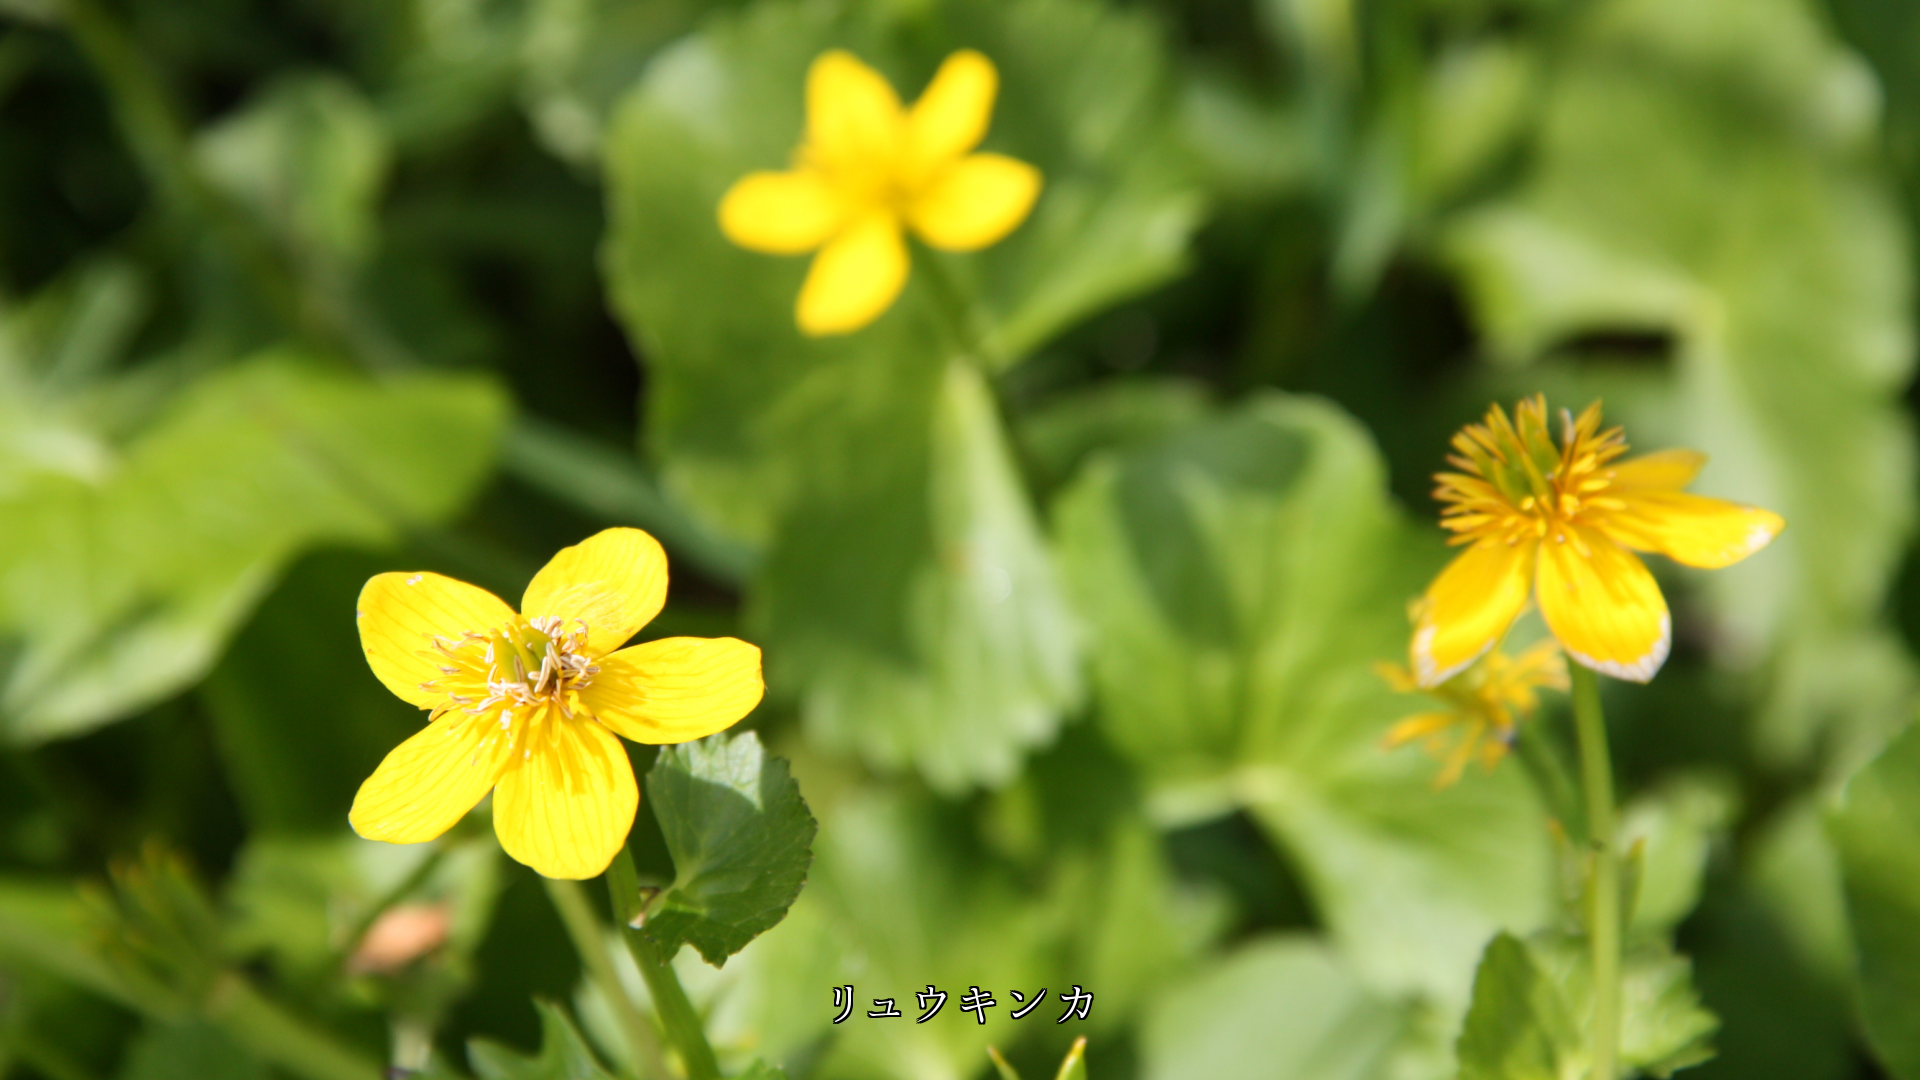 寂しさも　いつしか忘れる　草原で黄や多彩な色の　花たちを見ると